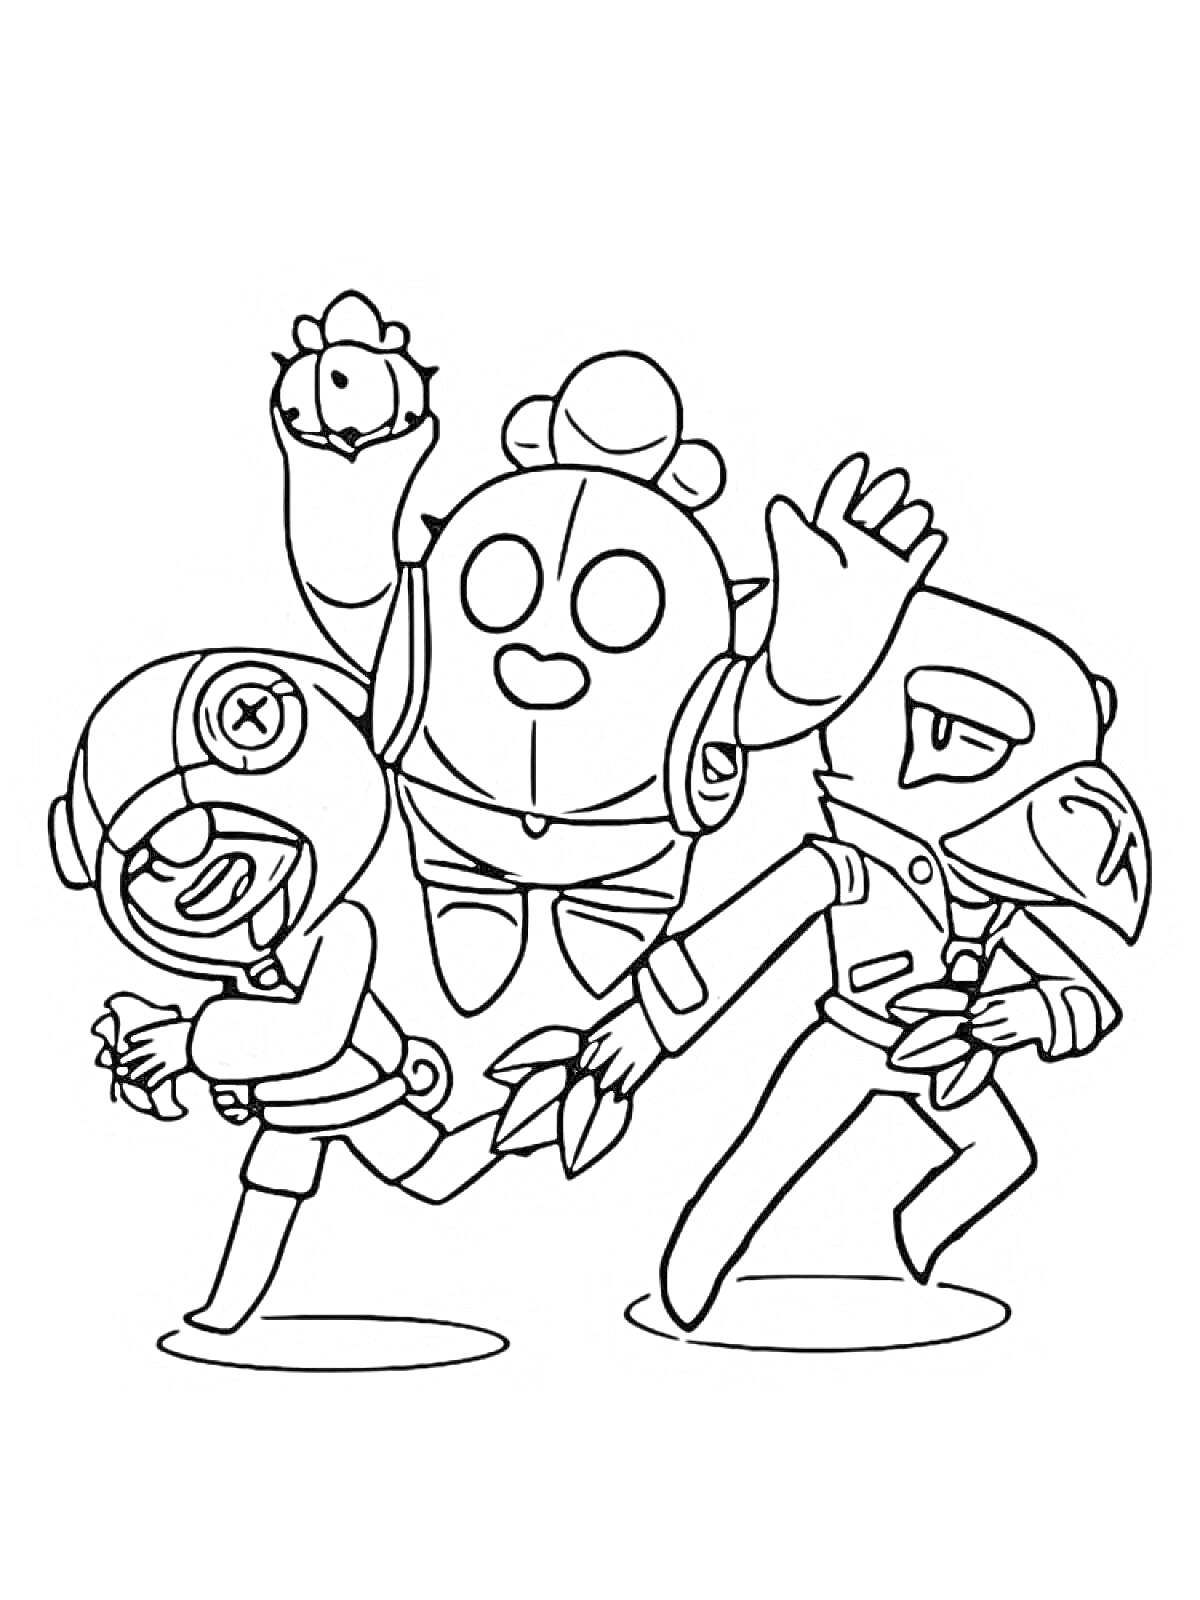 Раскраска Три персонажа мультфильма, один держит предмет, два бежат